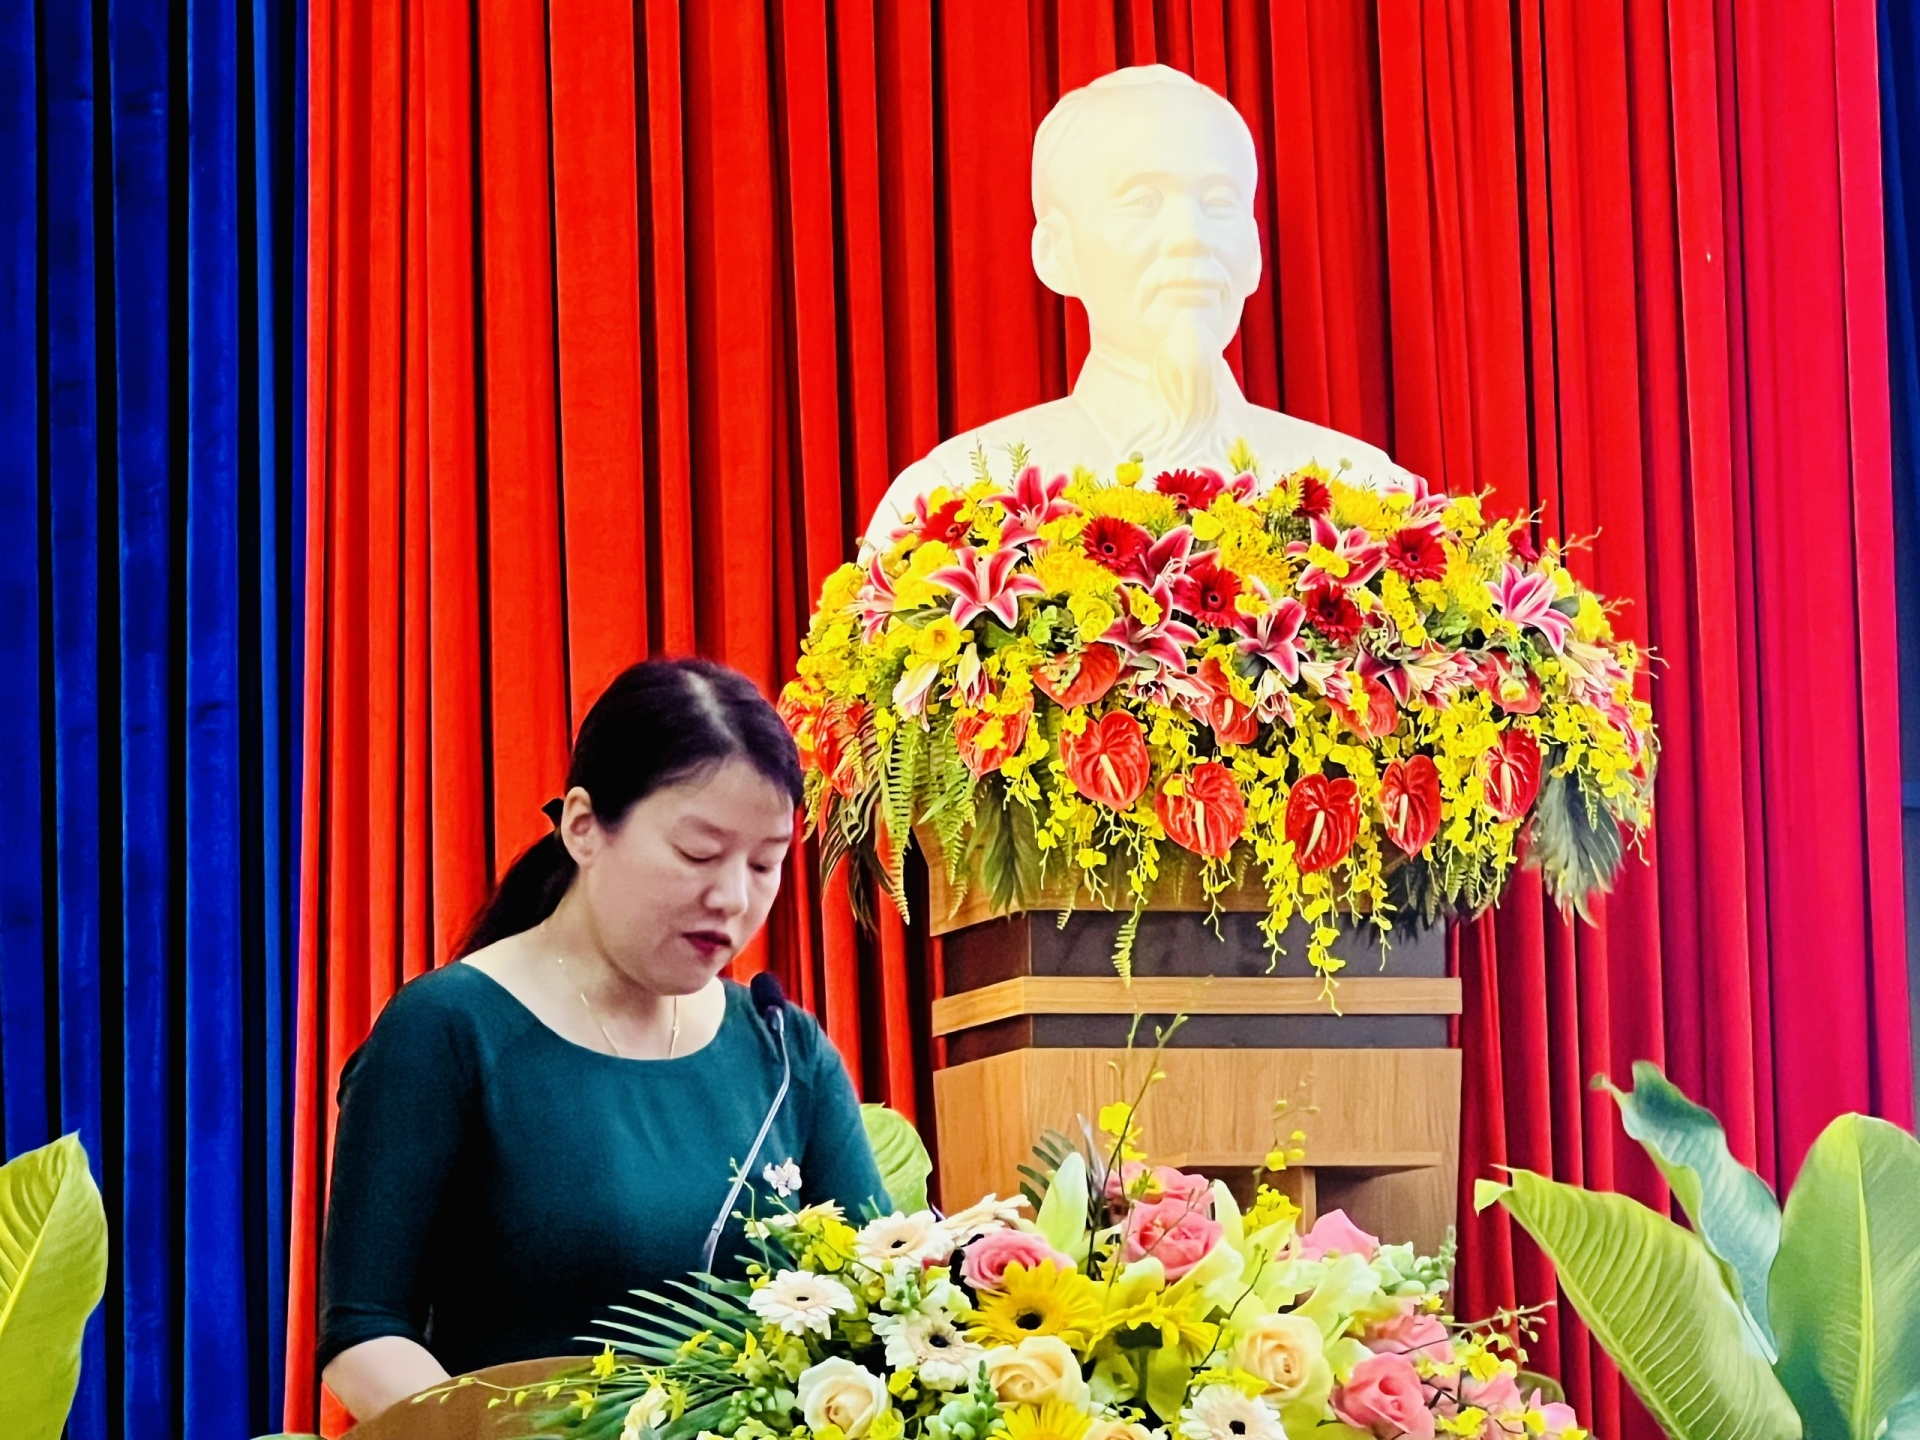 Phó Chủ tịch UBND TP Đà Lạt Trần Thị Vũ Loan báo cáo kỳ họp về tình hình thực hiện kế hoạch kinh tế - xã hội 6 tháng đầu năm 